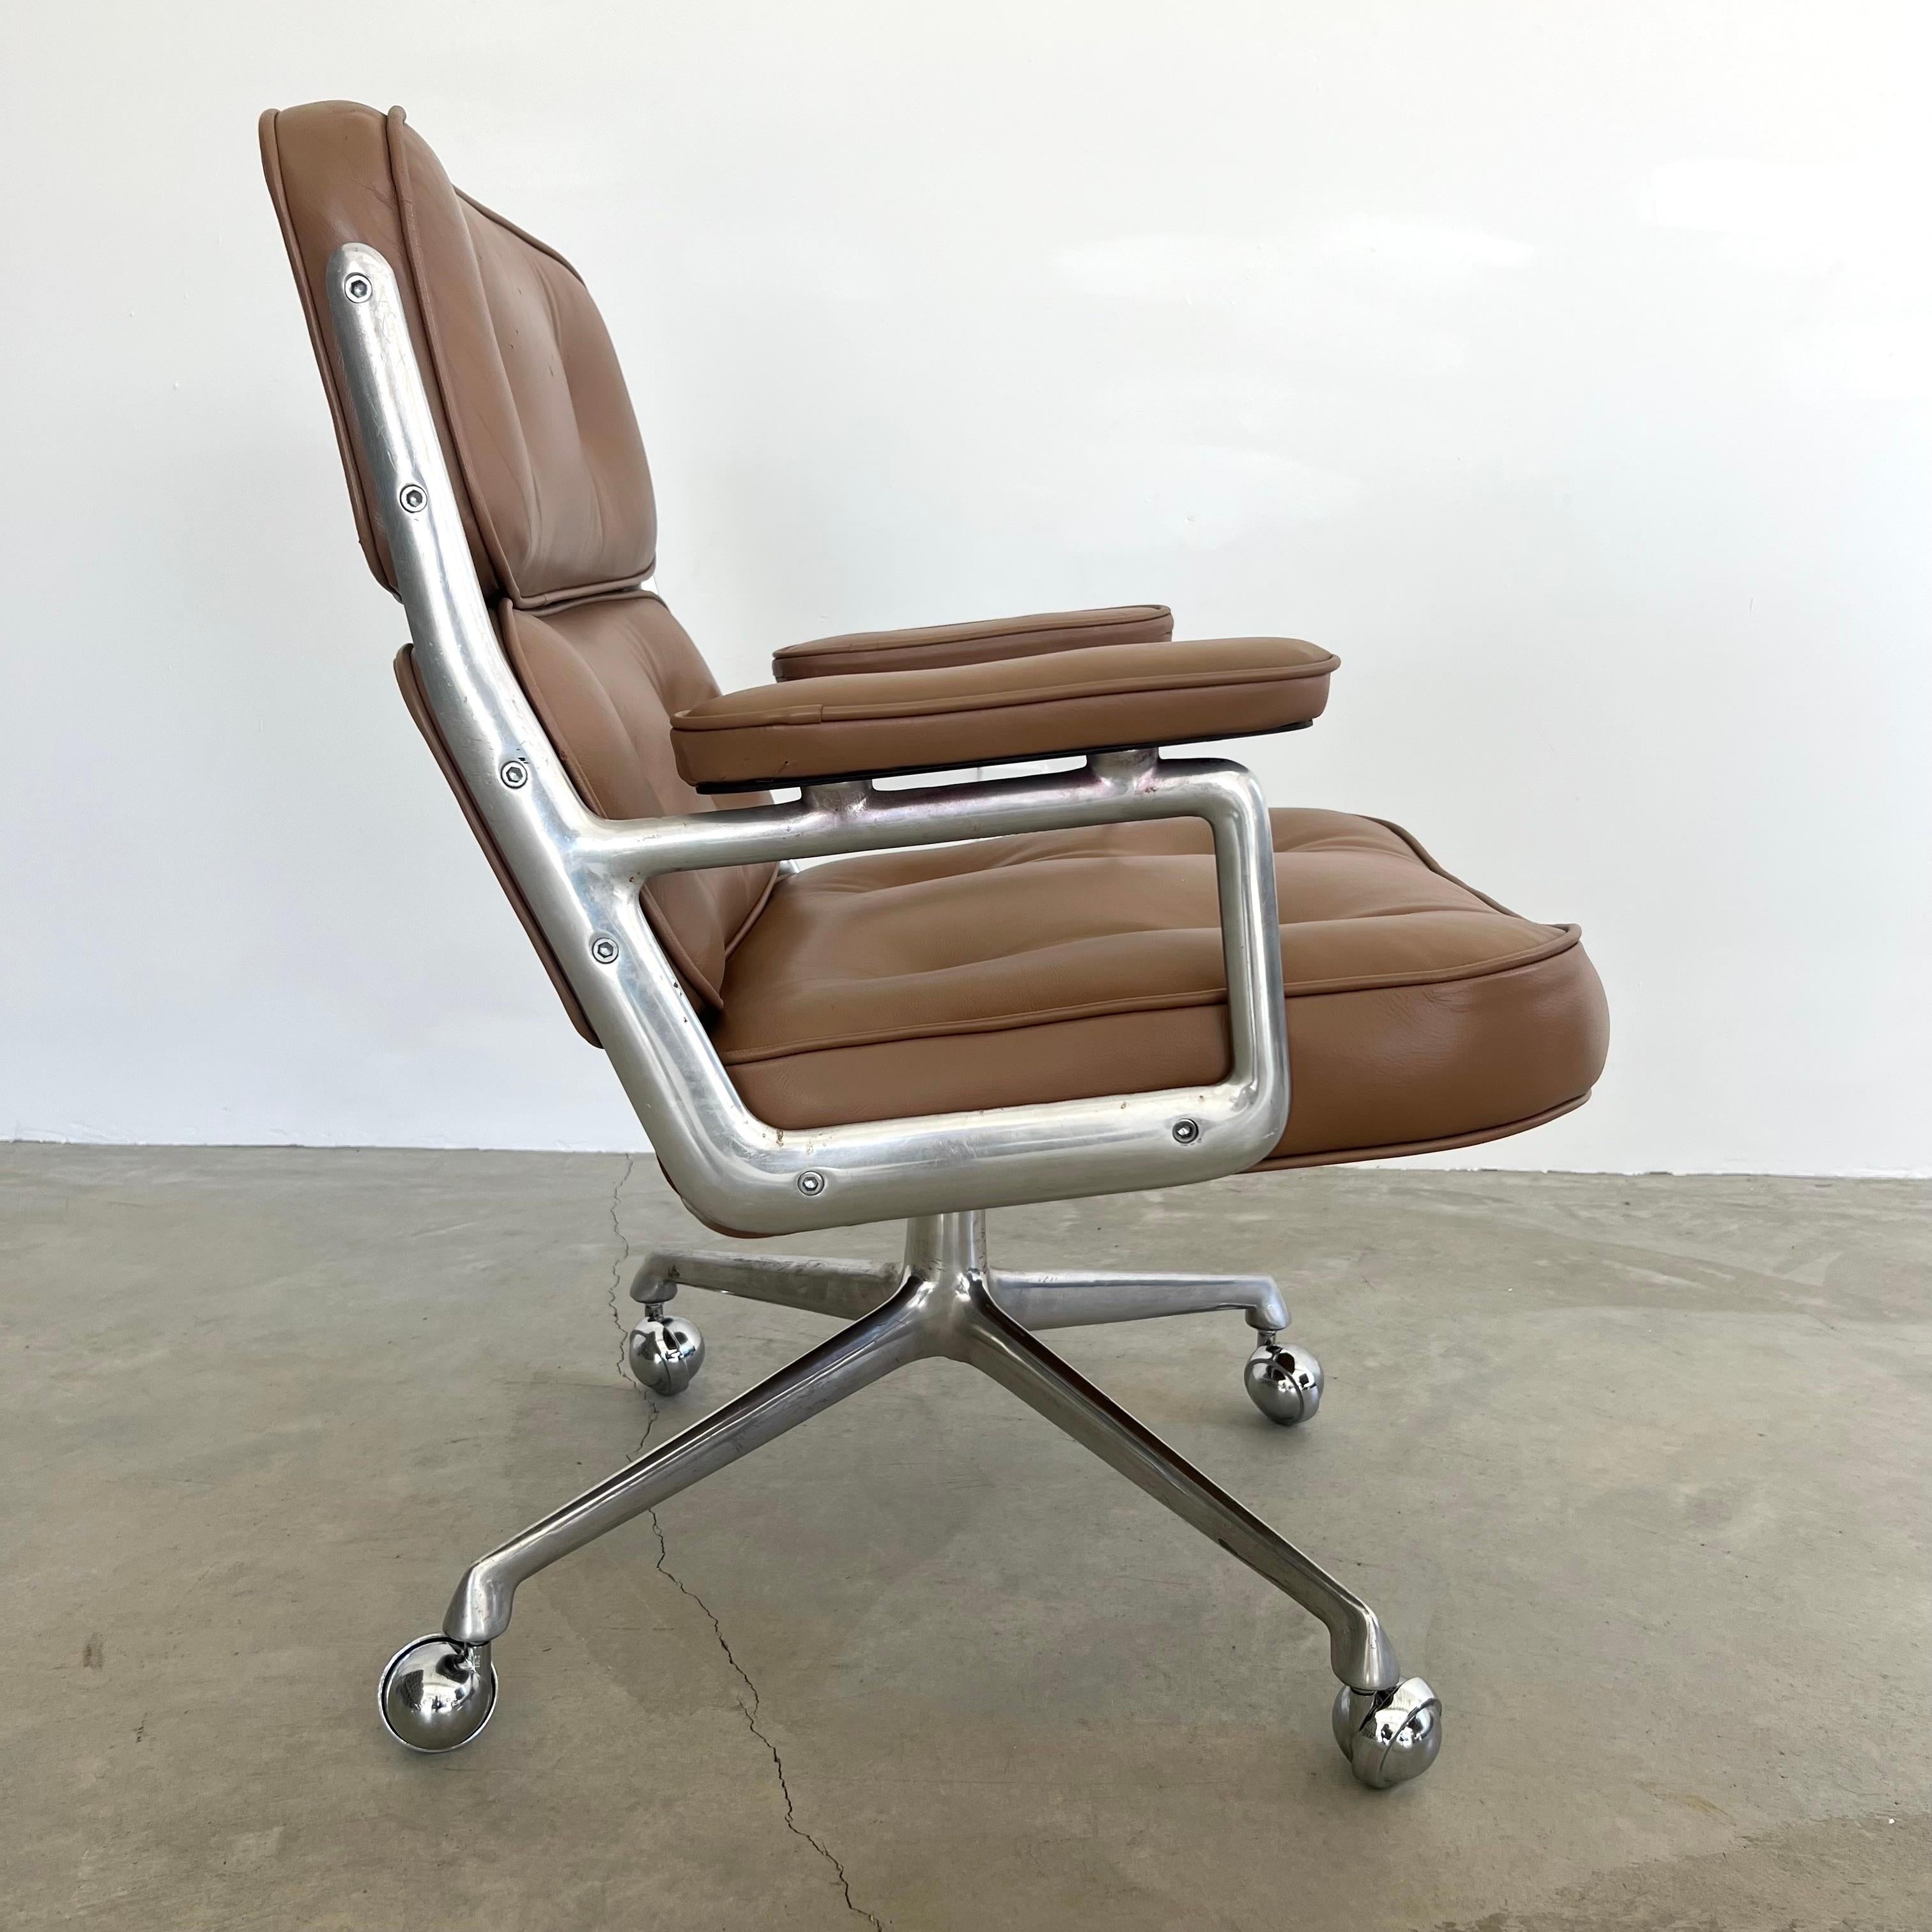 Chaise classique Eames Time Life pour Herman Miller en cuir fauve avec un cadre et des pieds en aluminium poli. Conçu à l'origine en 1960 par Charles et Ray Eames pour le hall d'entrée de l'immeuble Time Life à New York. 

Récemment nettoyé et le